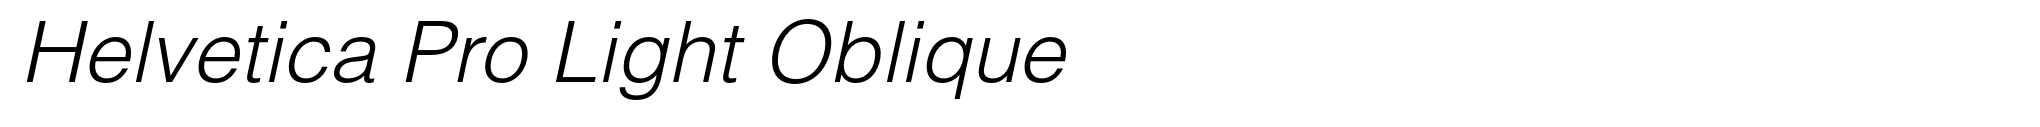 Helvetica Pro Light Oblique image